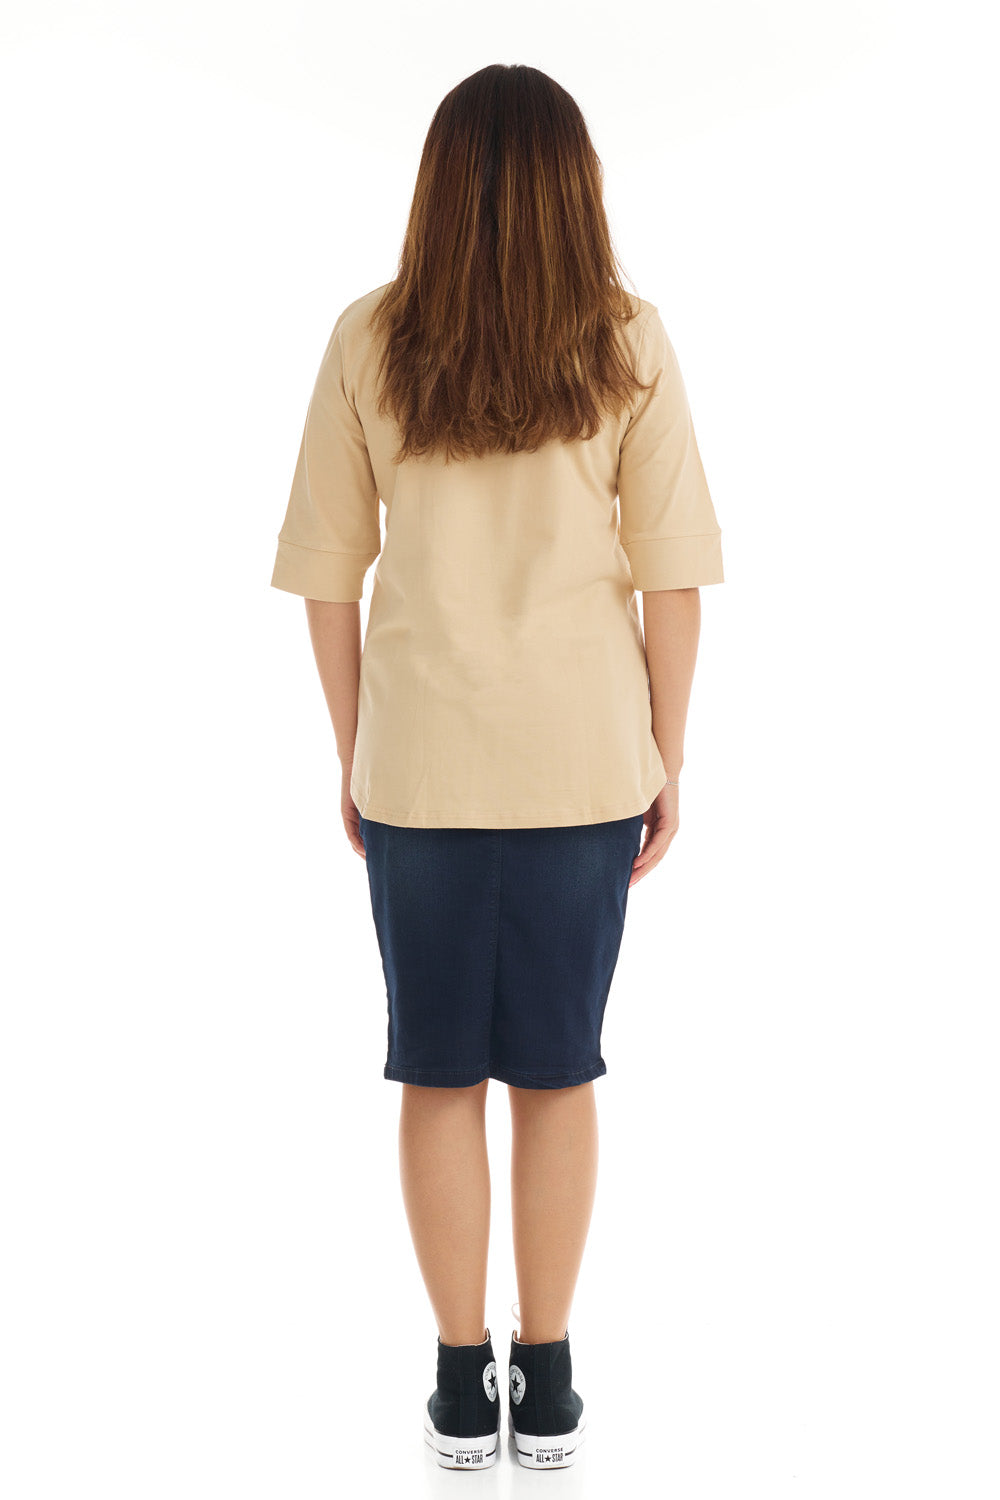 tan 3/4 cuff sleeve tshirt for women